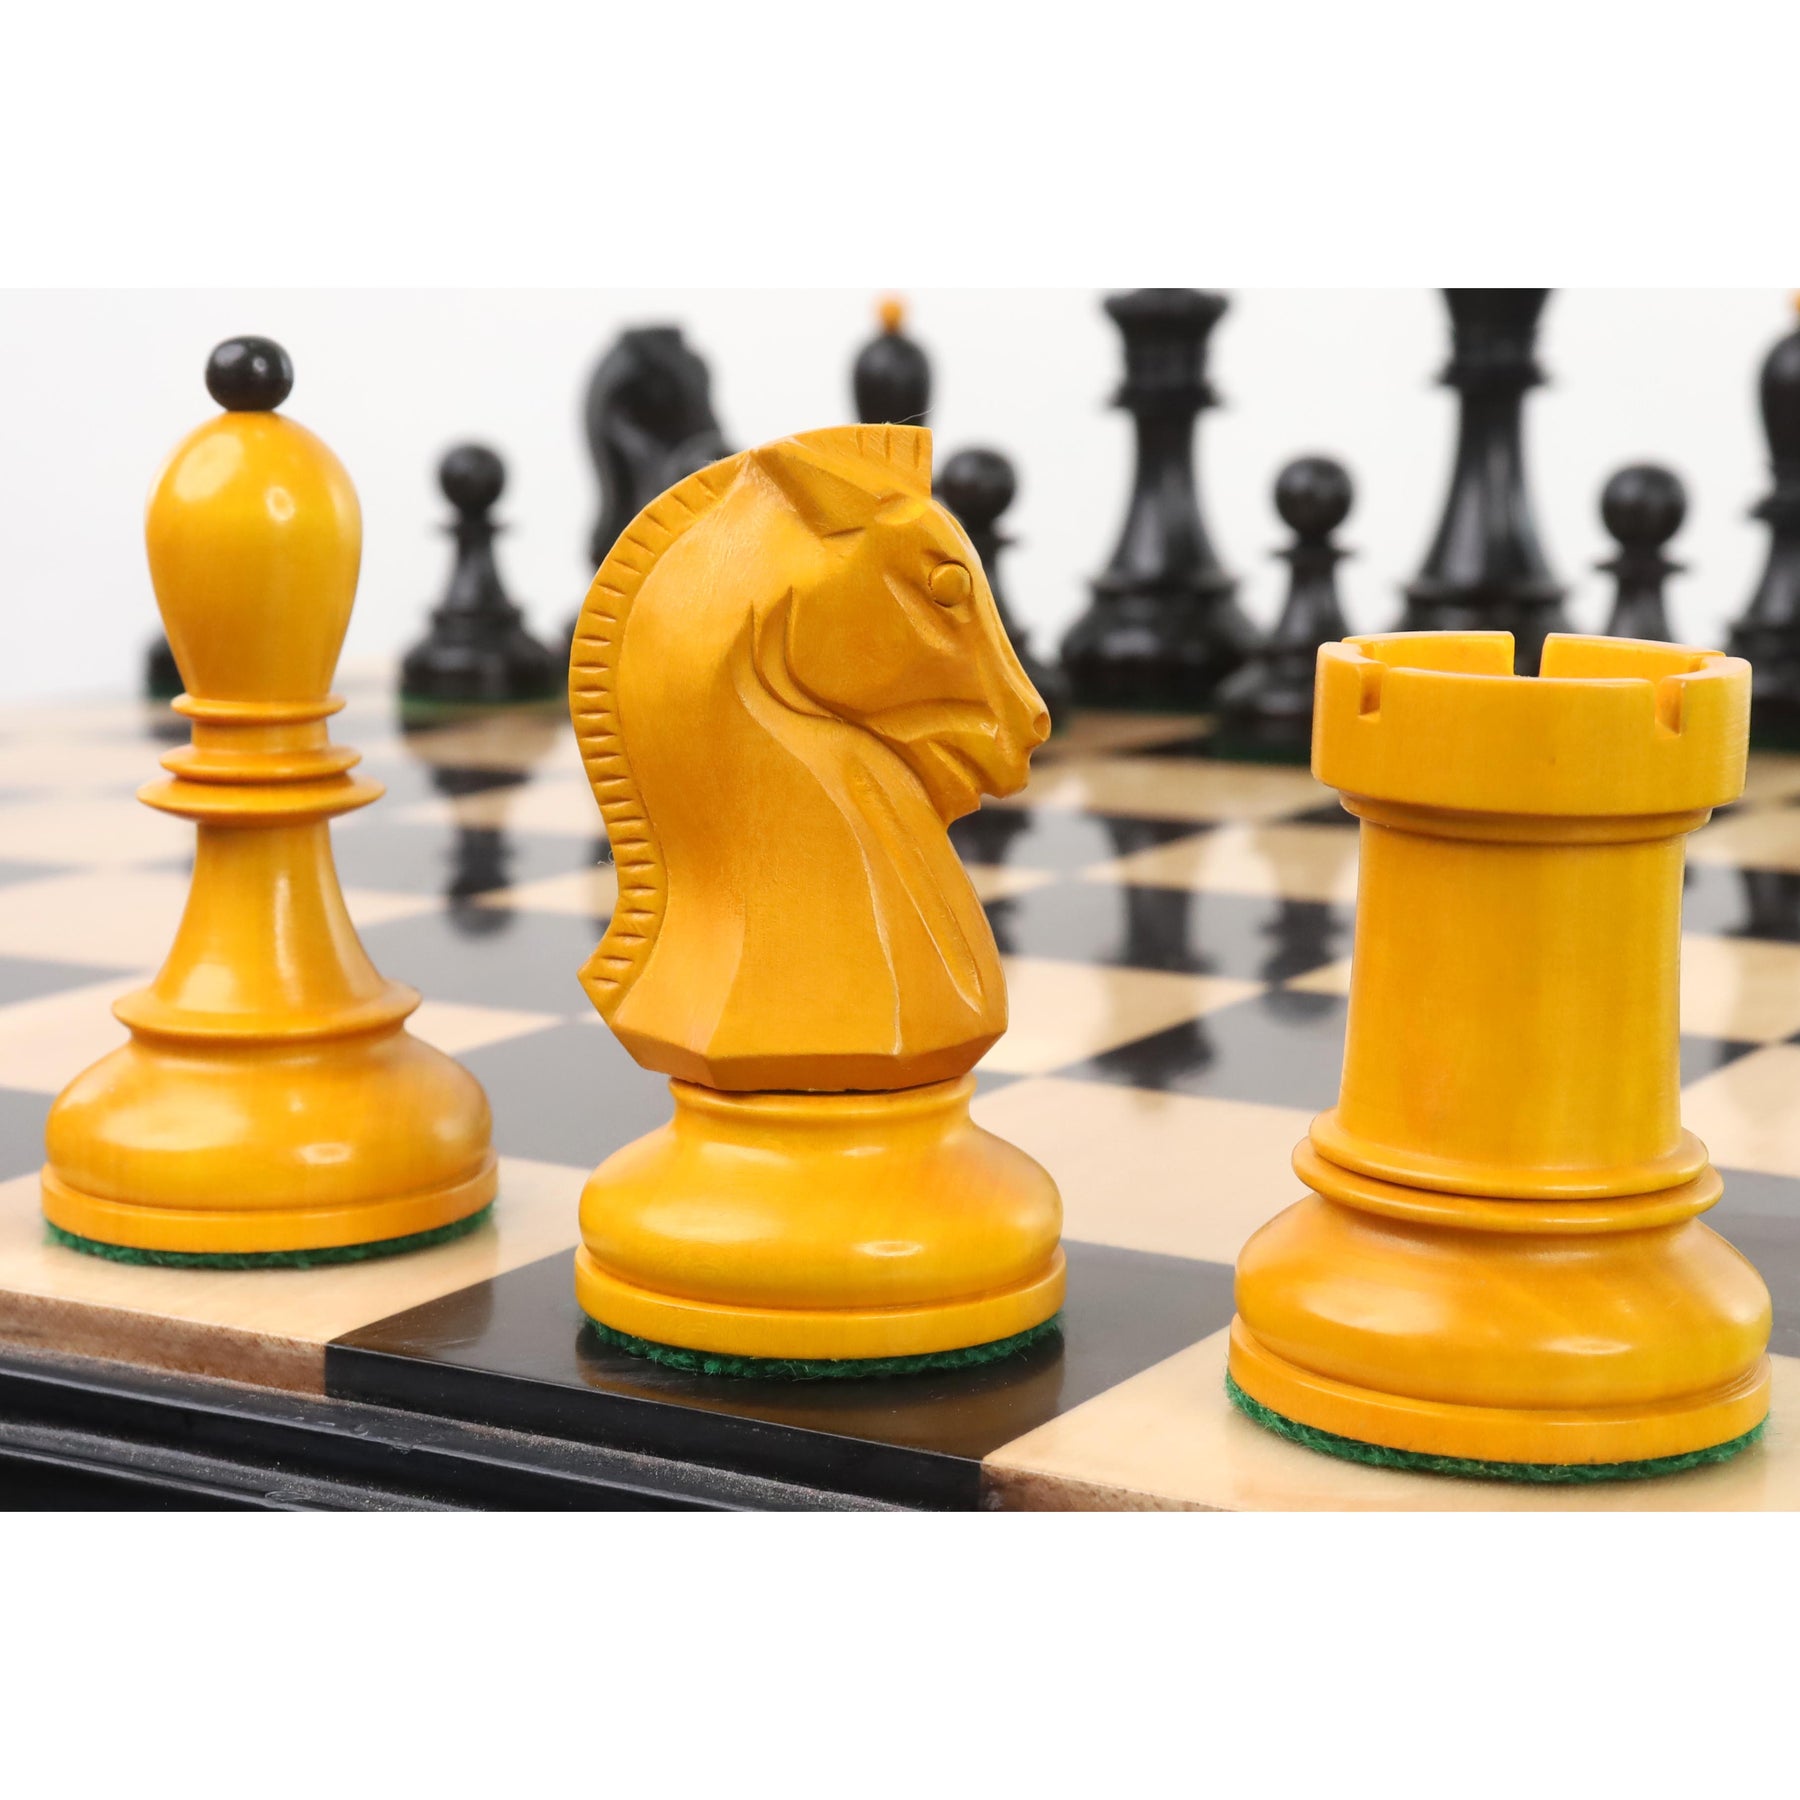 Schachbrett mit Schachfiguren-19505